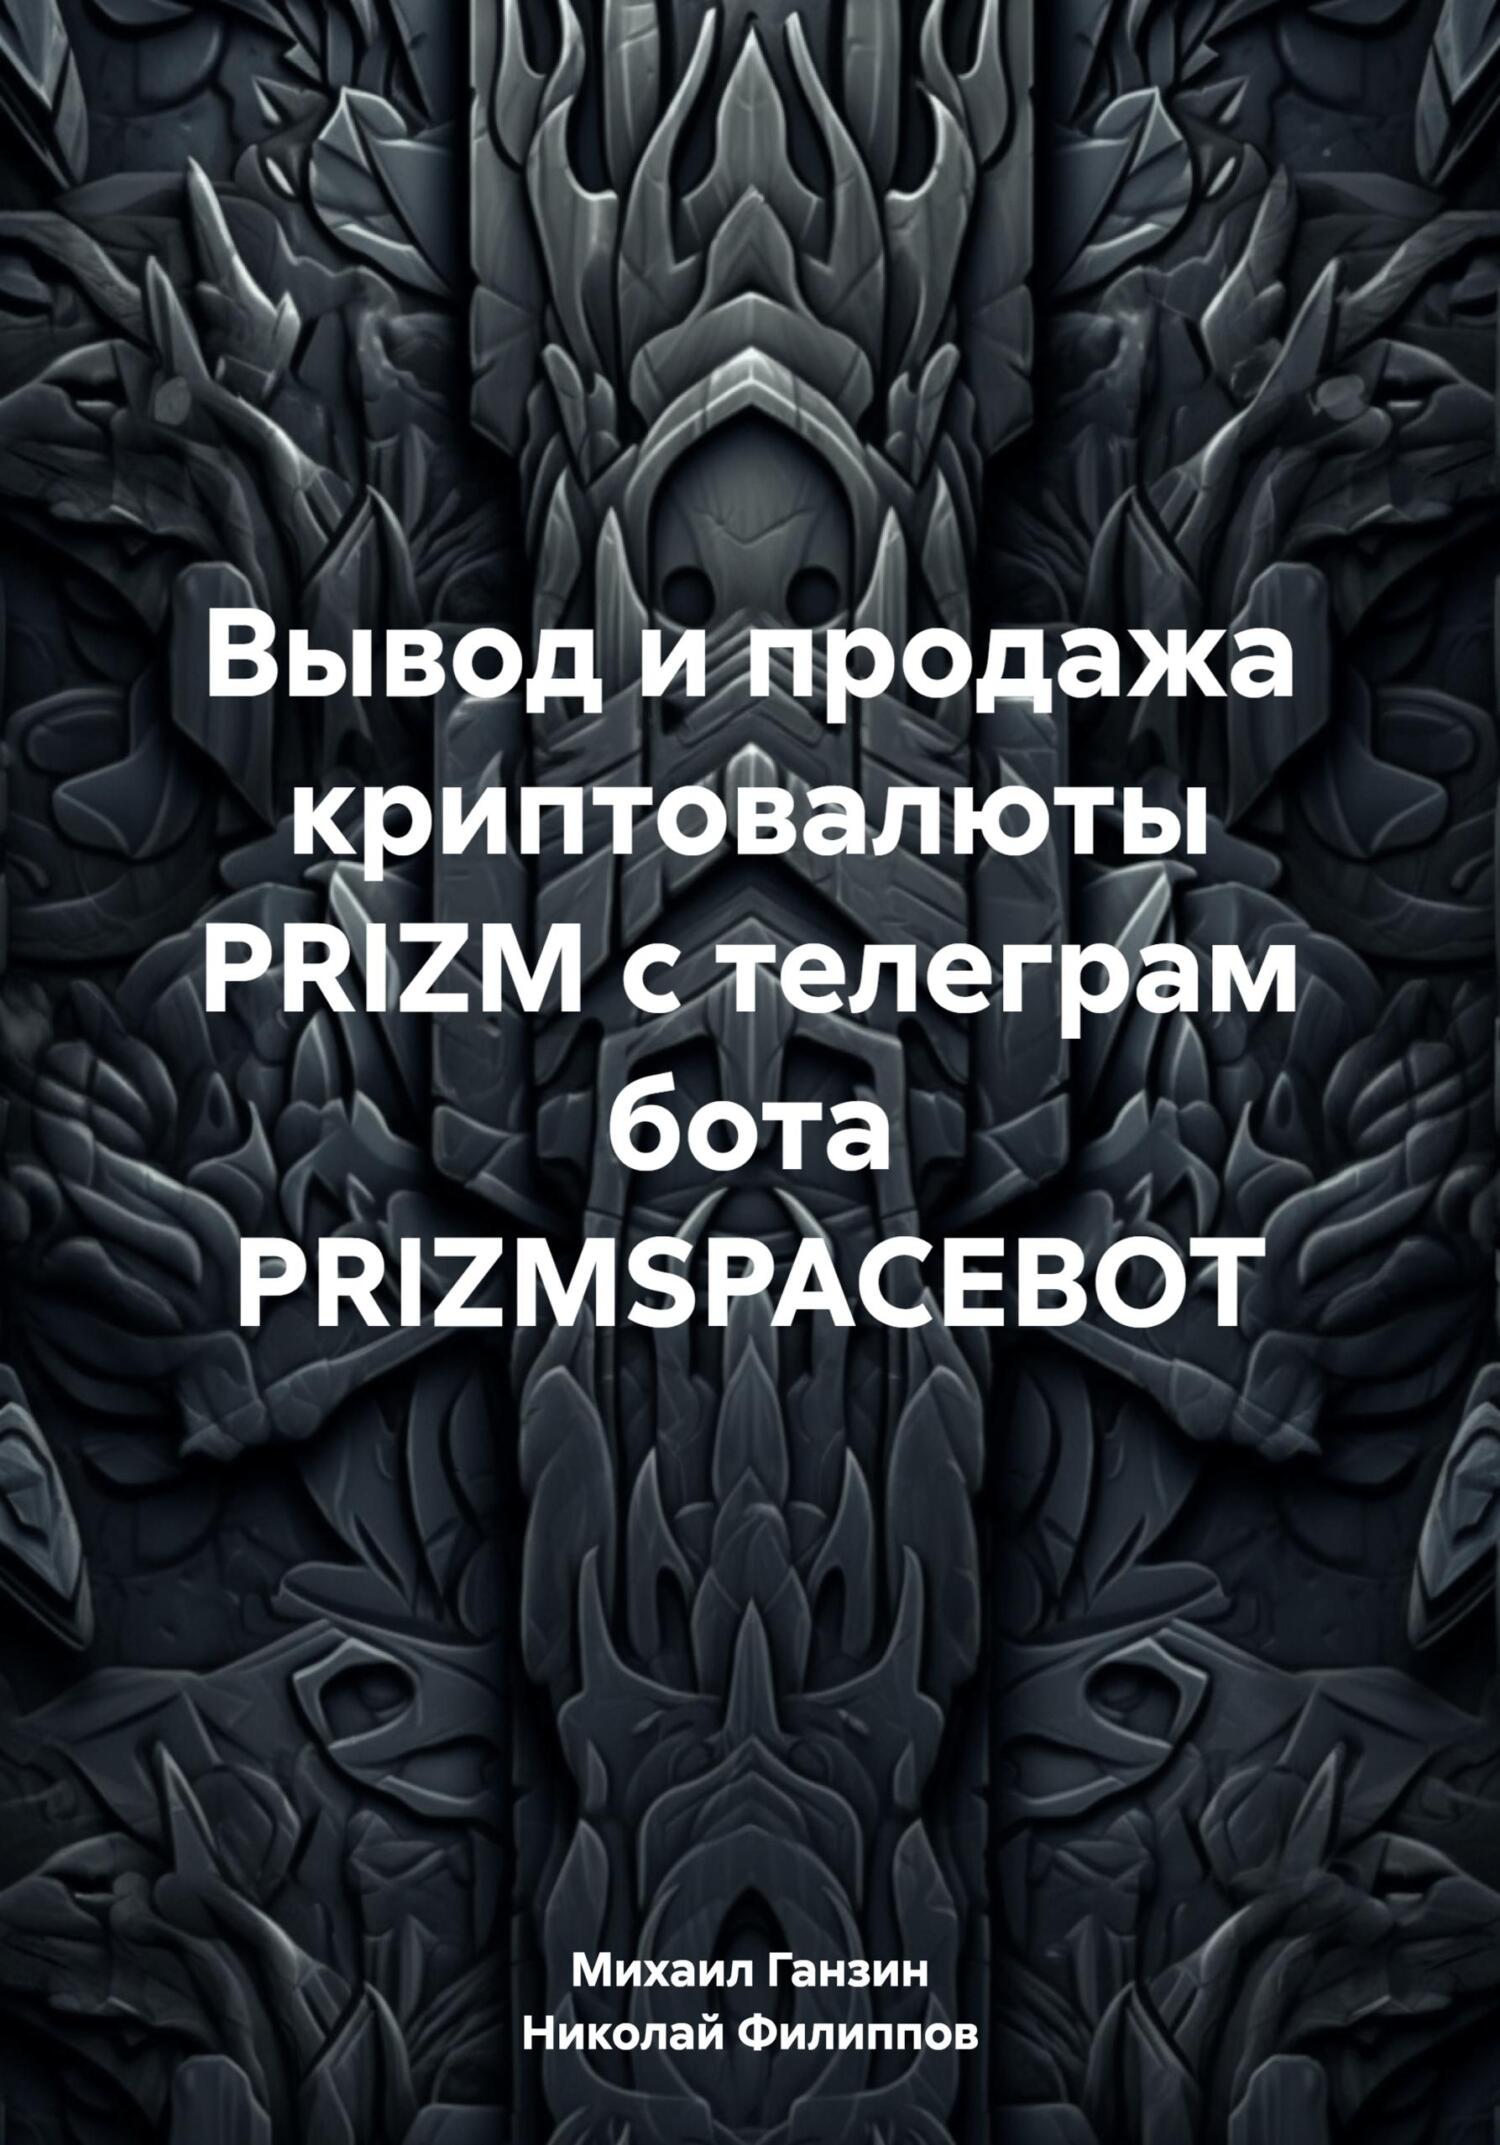 Вывод и продажа криптовалюты PRIZM с телеграм бота PRIZMSPACEBOT - Михаил Прокофьевич Ганзин